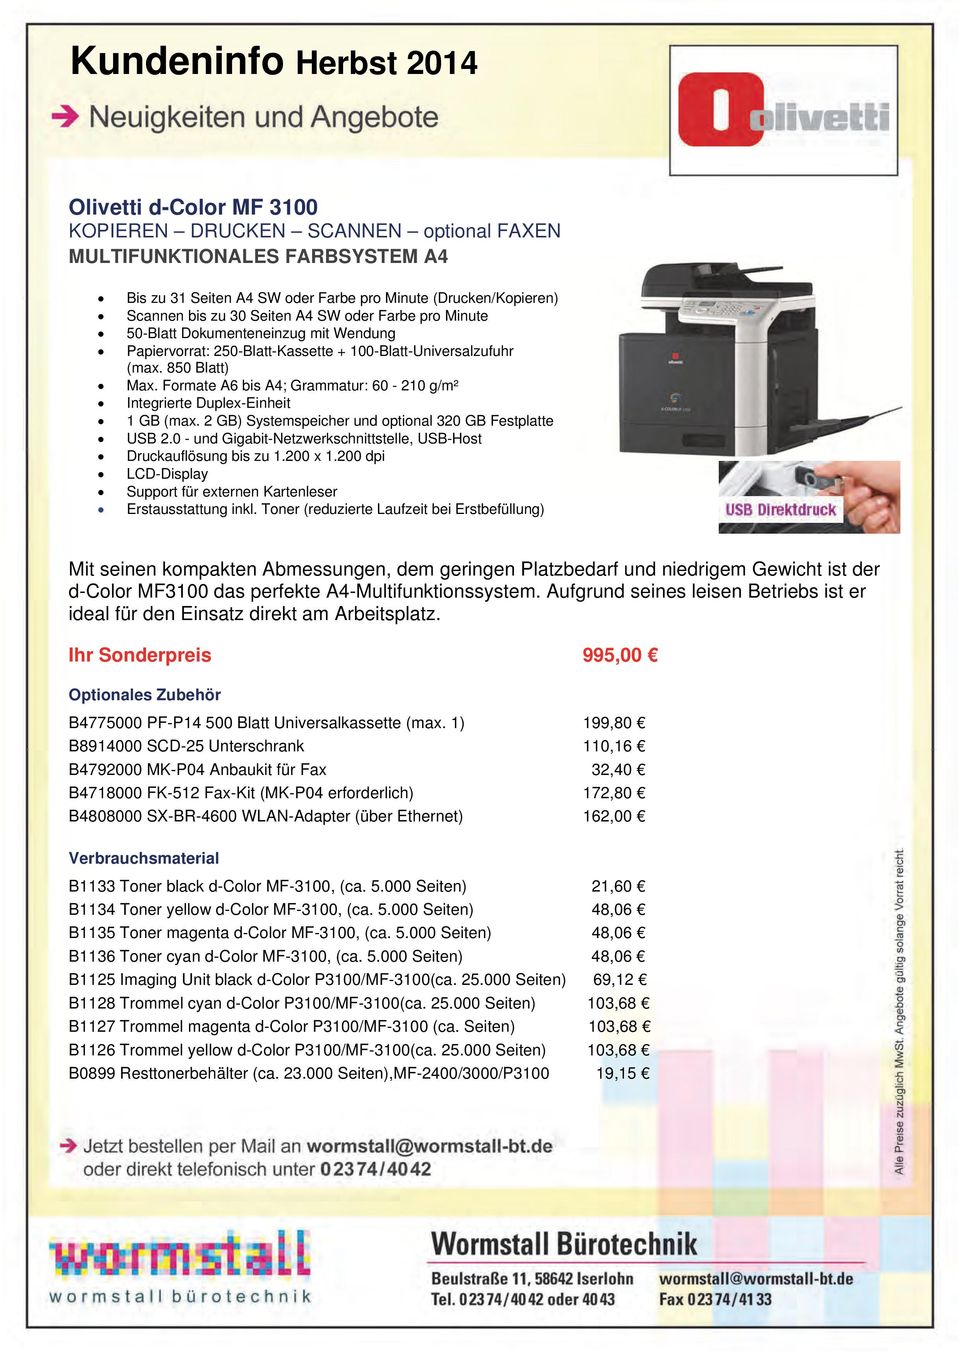 Formate A6 bis A4; Grammatur: 60-210 g/m² Integrierte Duplex-Einheit 1 GB (max. 2 GB) Systemspeicher und optional 320 GB Festplatte USB 2.